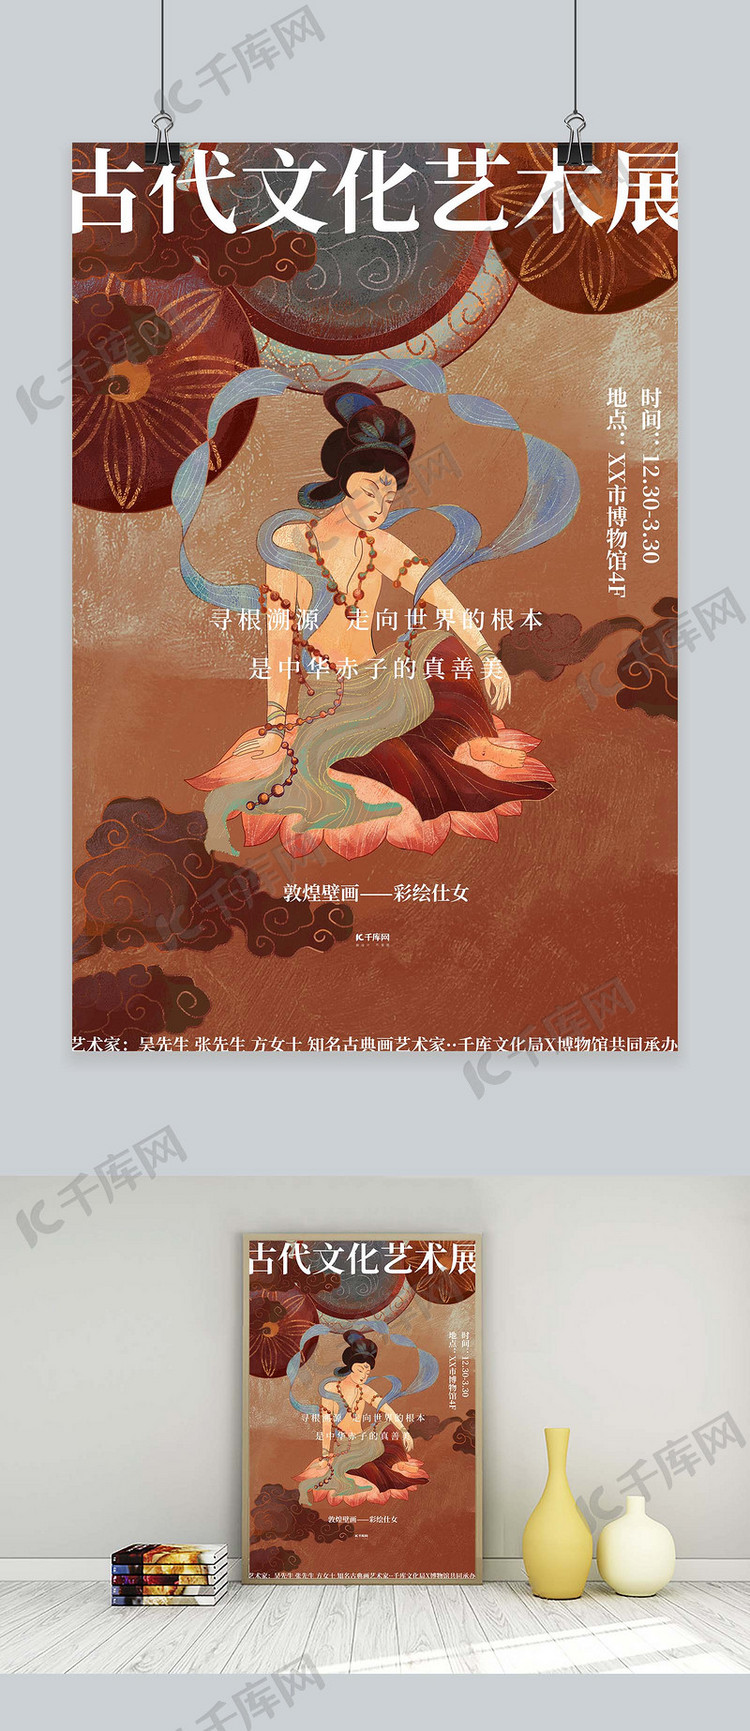 艺术展古典云纹棕色中国风海报